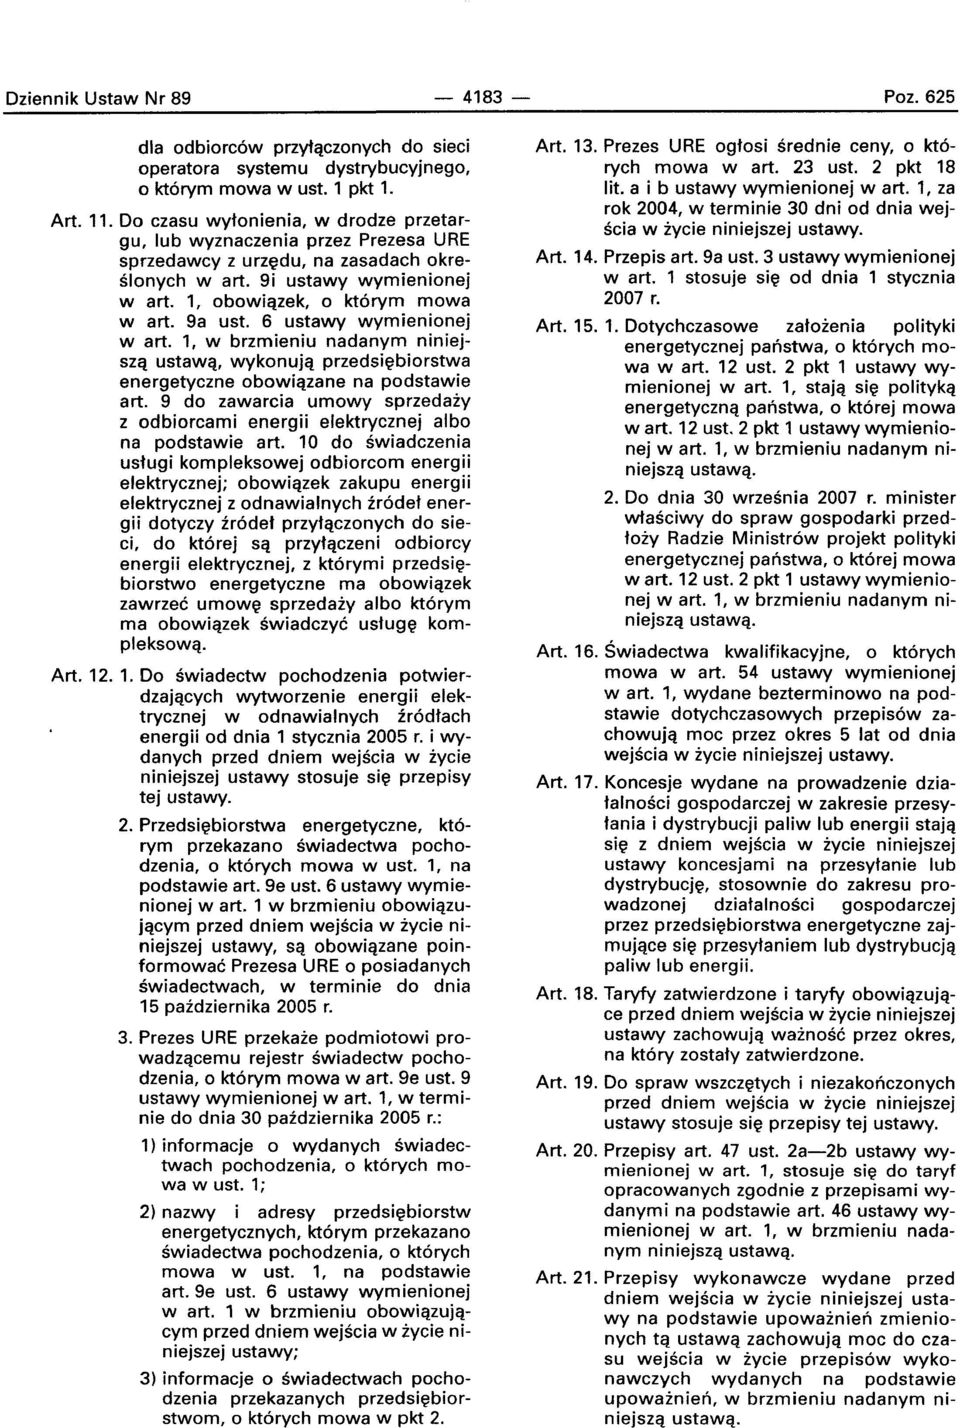 6 ustawy wymienionej wart. 1, w brzmieniu nadanym niniej SZq ustawa, wykonujq przadsieblorstwa energetyczne obowiqzane na podstawie art.